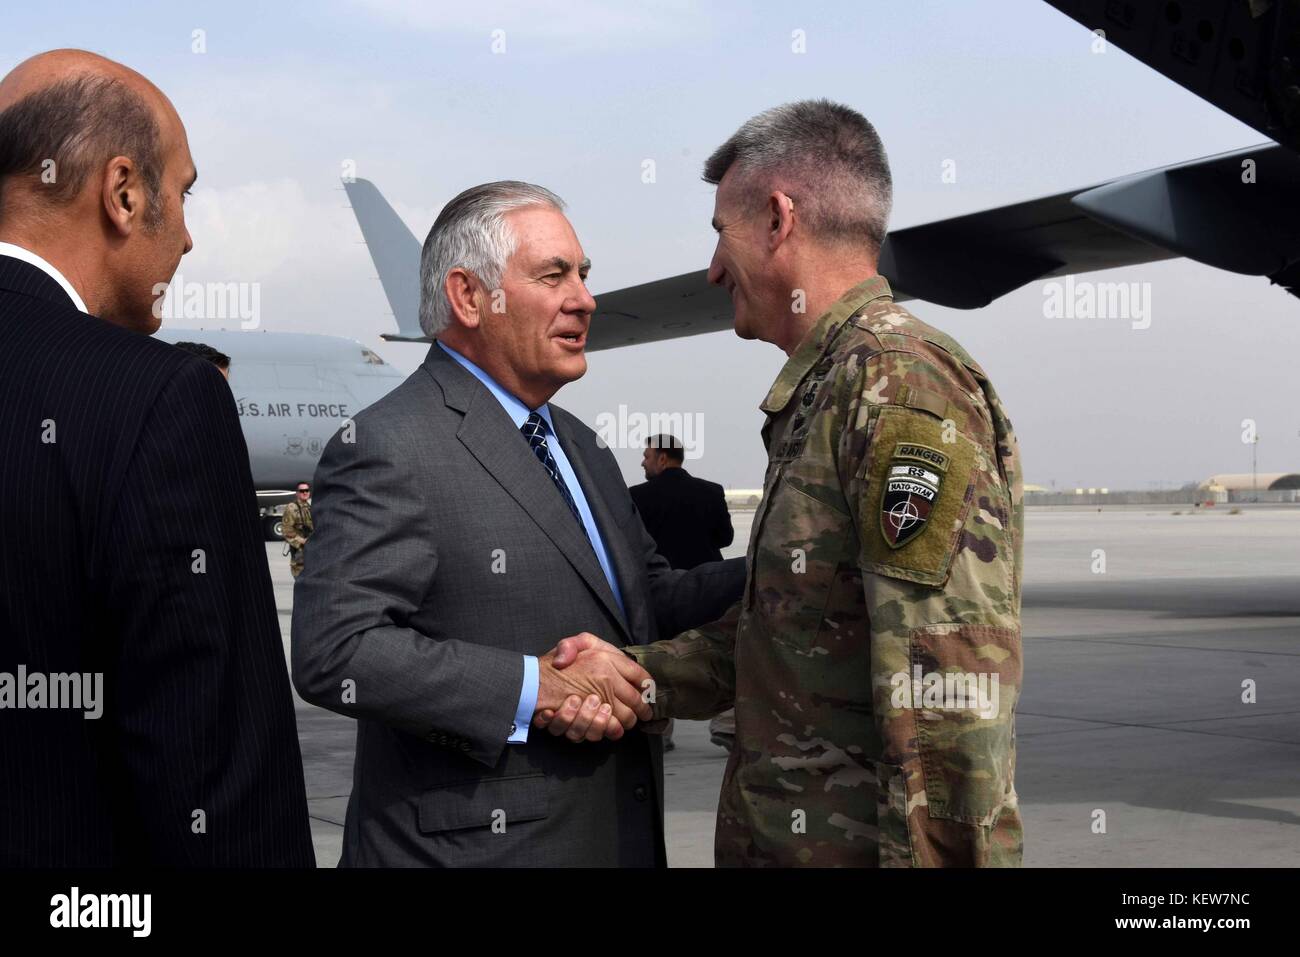 Il Segretario di Stato americano Rex Tillerson, centro, si congedò dal Gen. John Nicholson Jr., Comandante delle forze americane in Afghanistan a Bagram Airfield 23 ottobre 2017 a Bagram, Afghanistan. Foto Stock